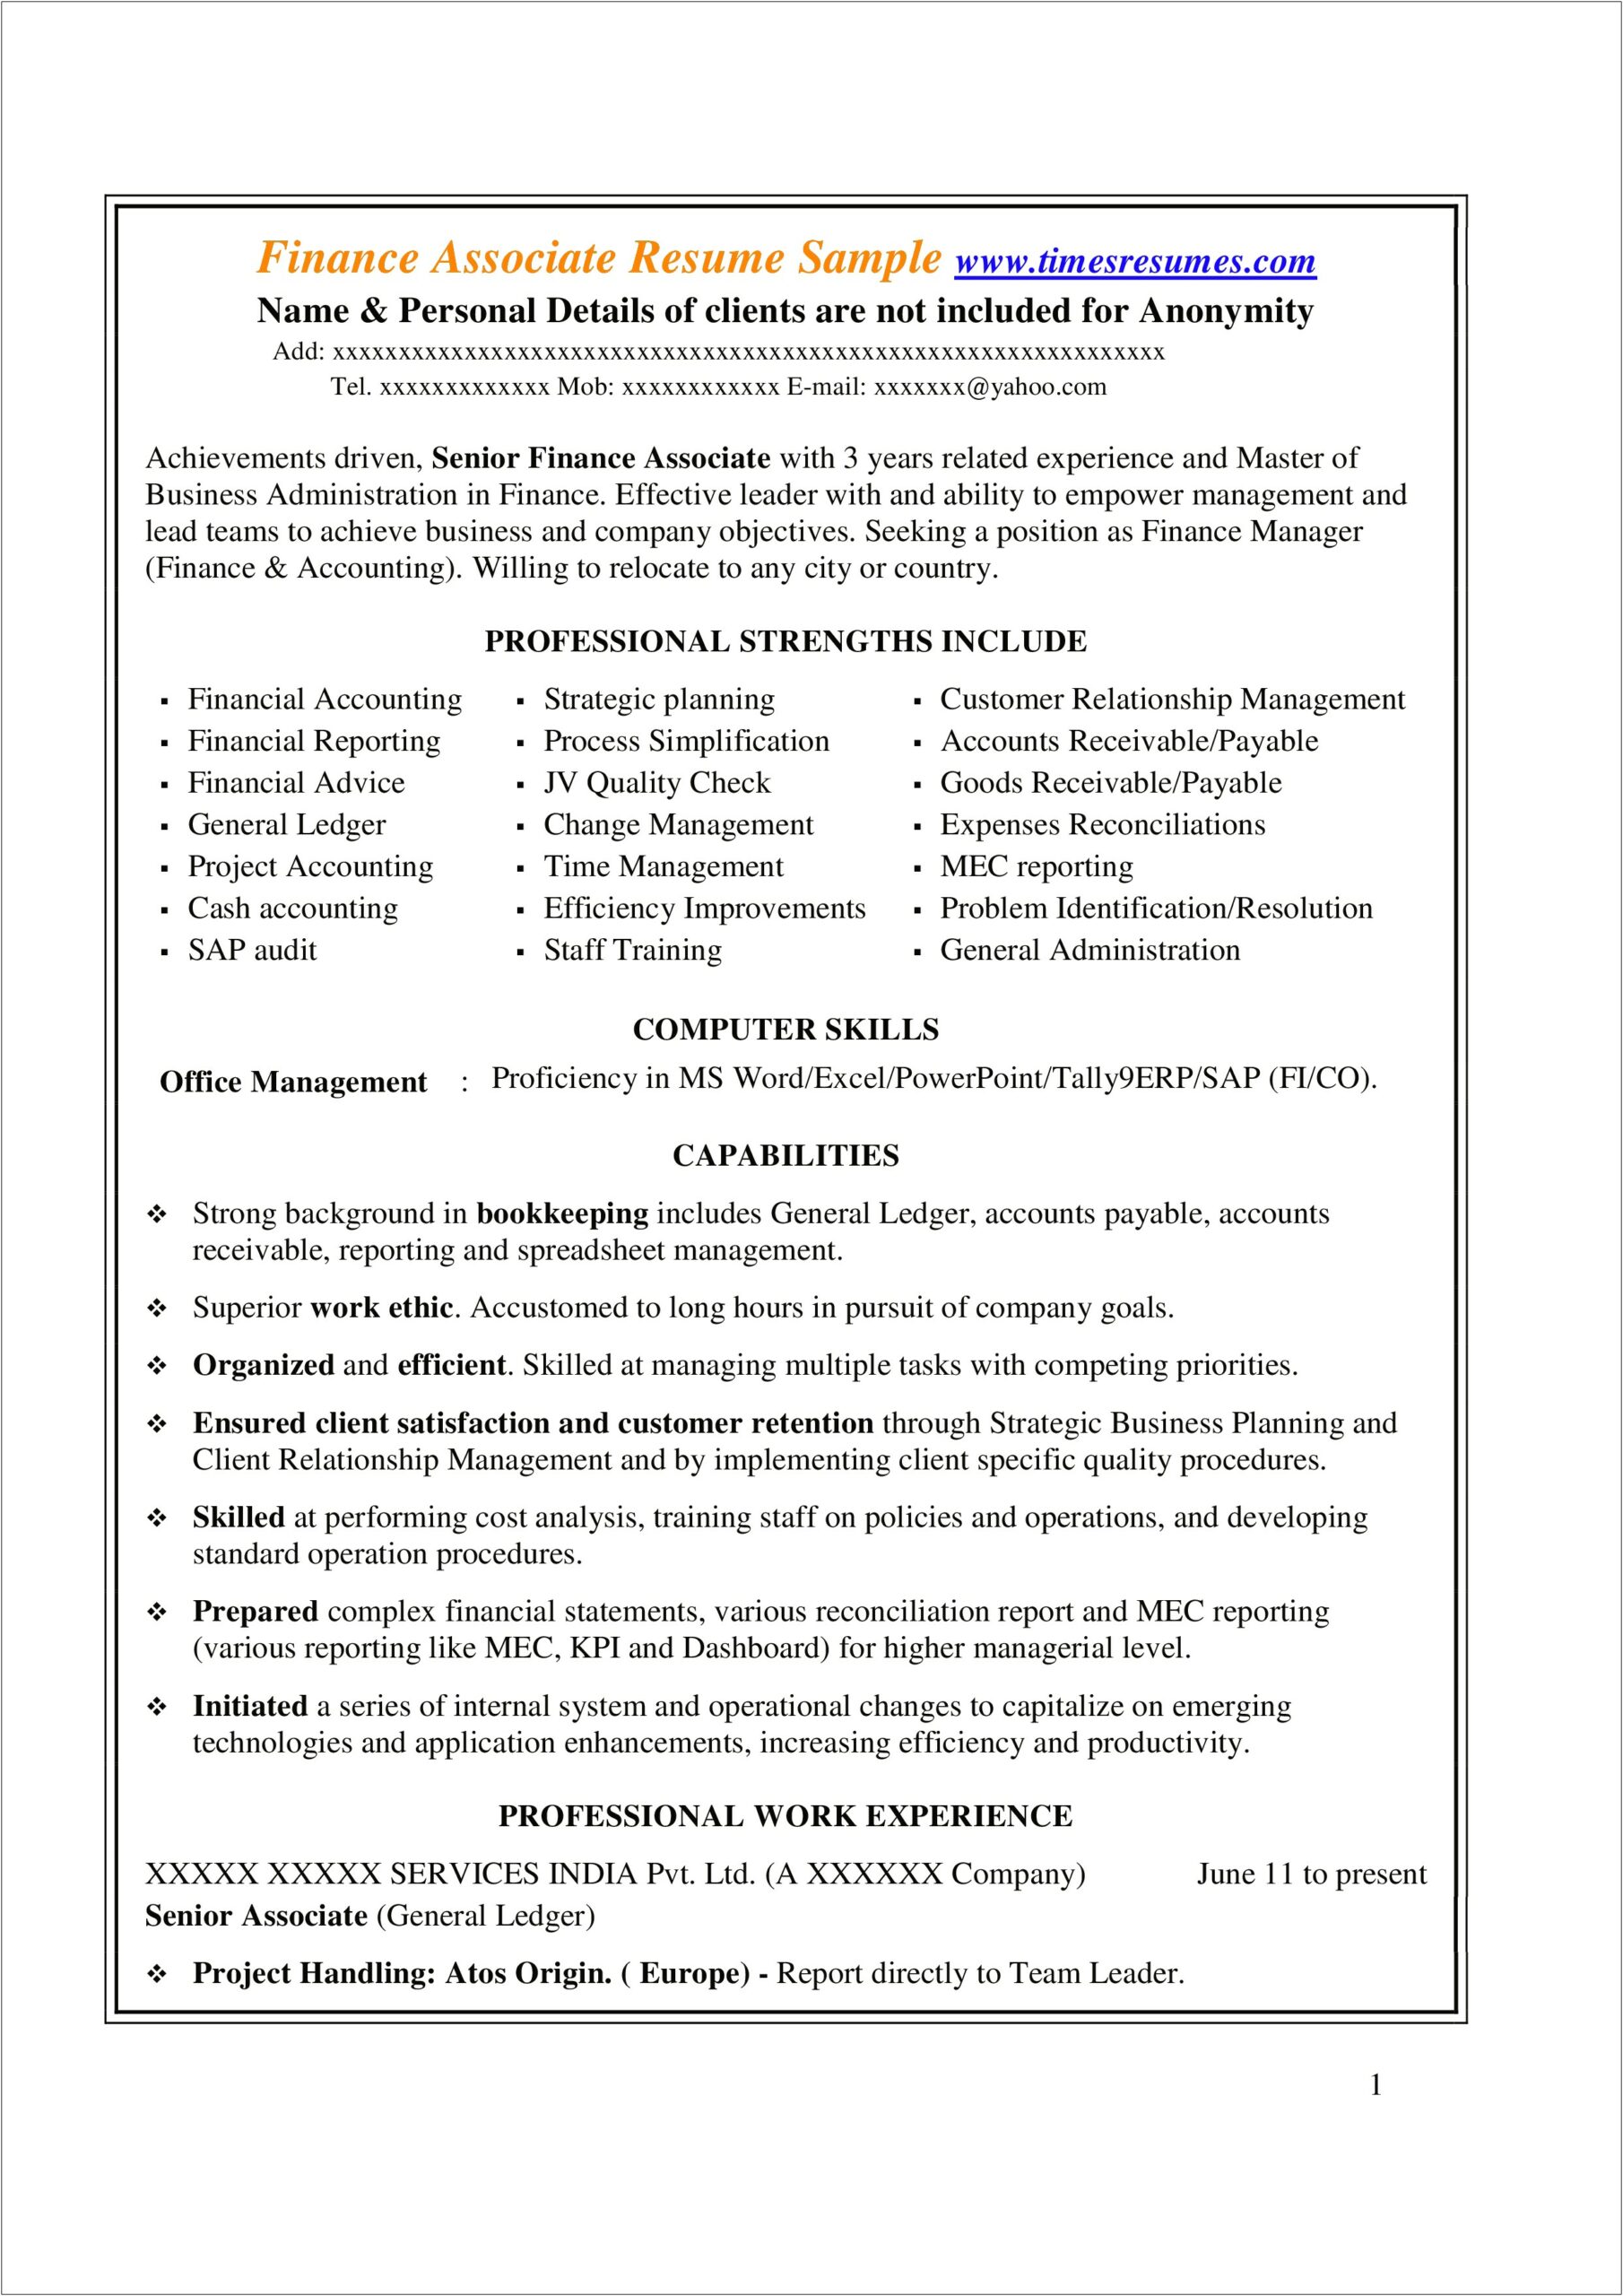 Best Resume Objectives For Finance Associate Seeking